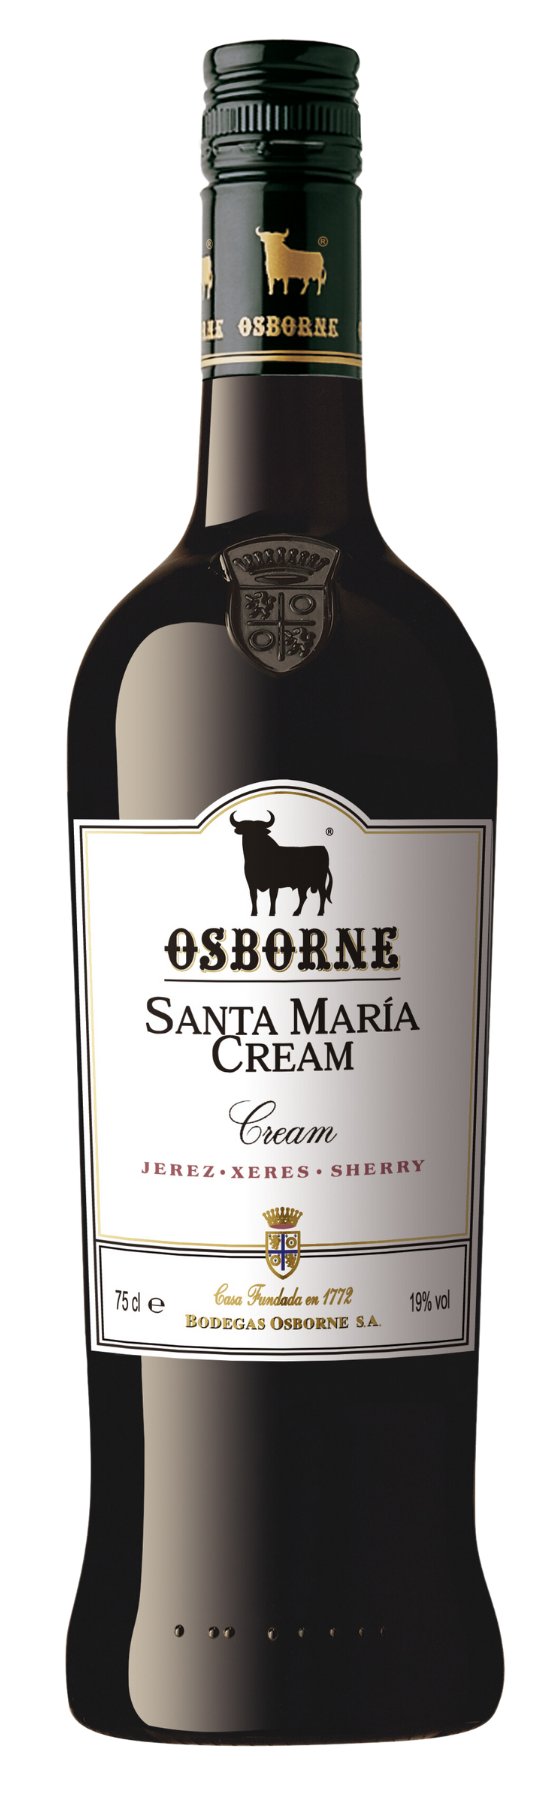 Osborne Sherry Cream Santa Maria